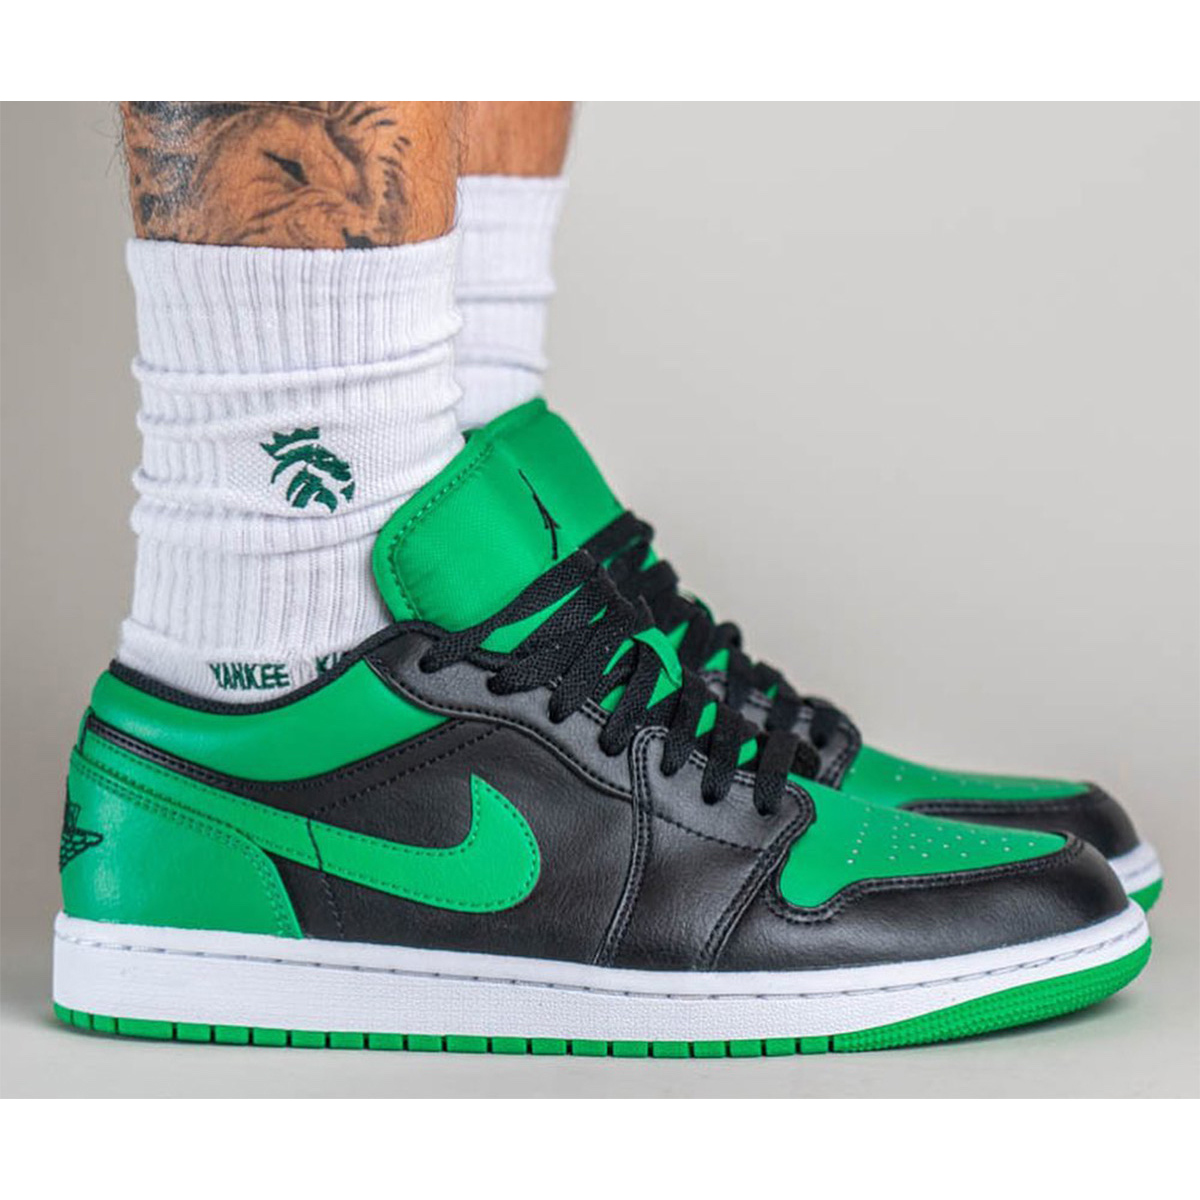 Air Jordan 1 Low “Lucky Green” 553558-065 | Nice Kicks